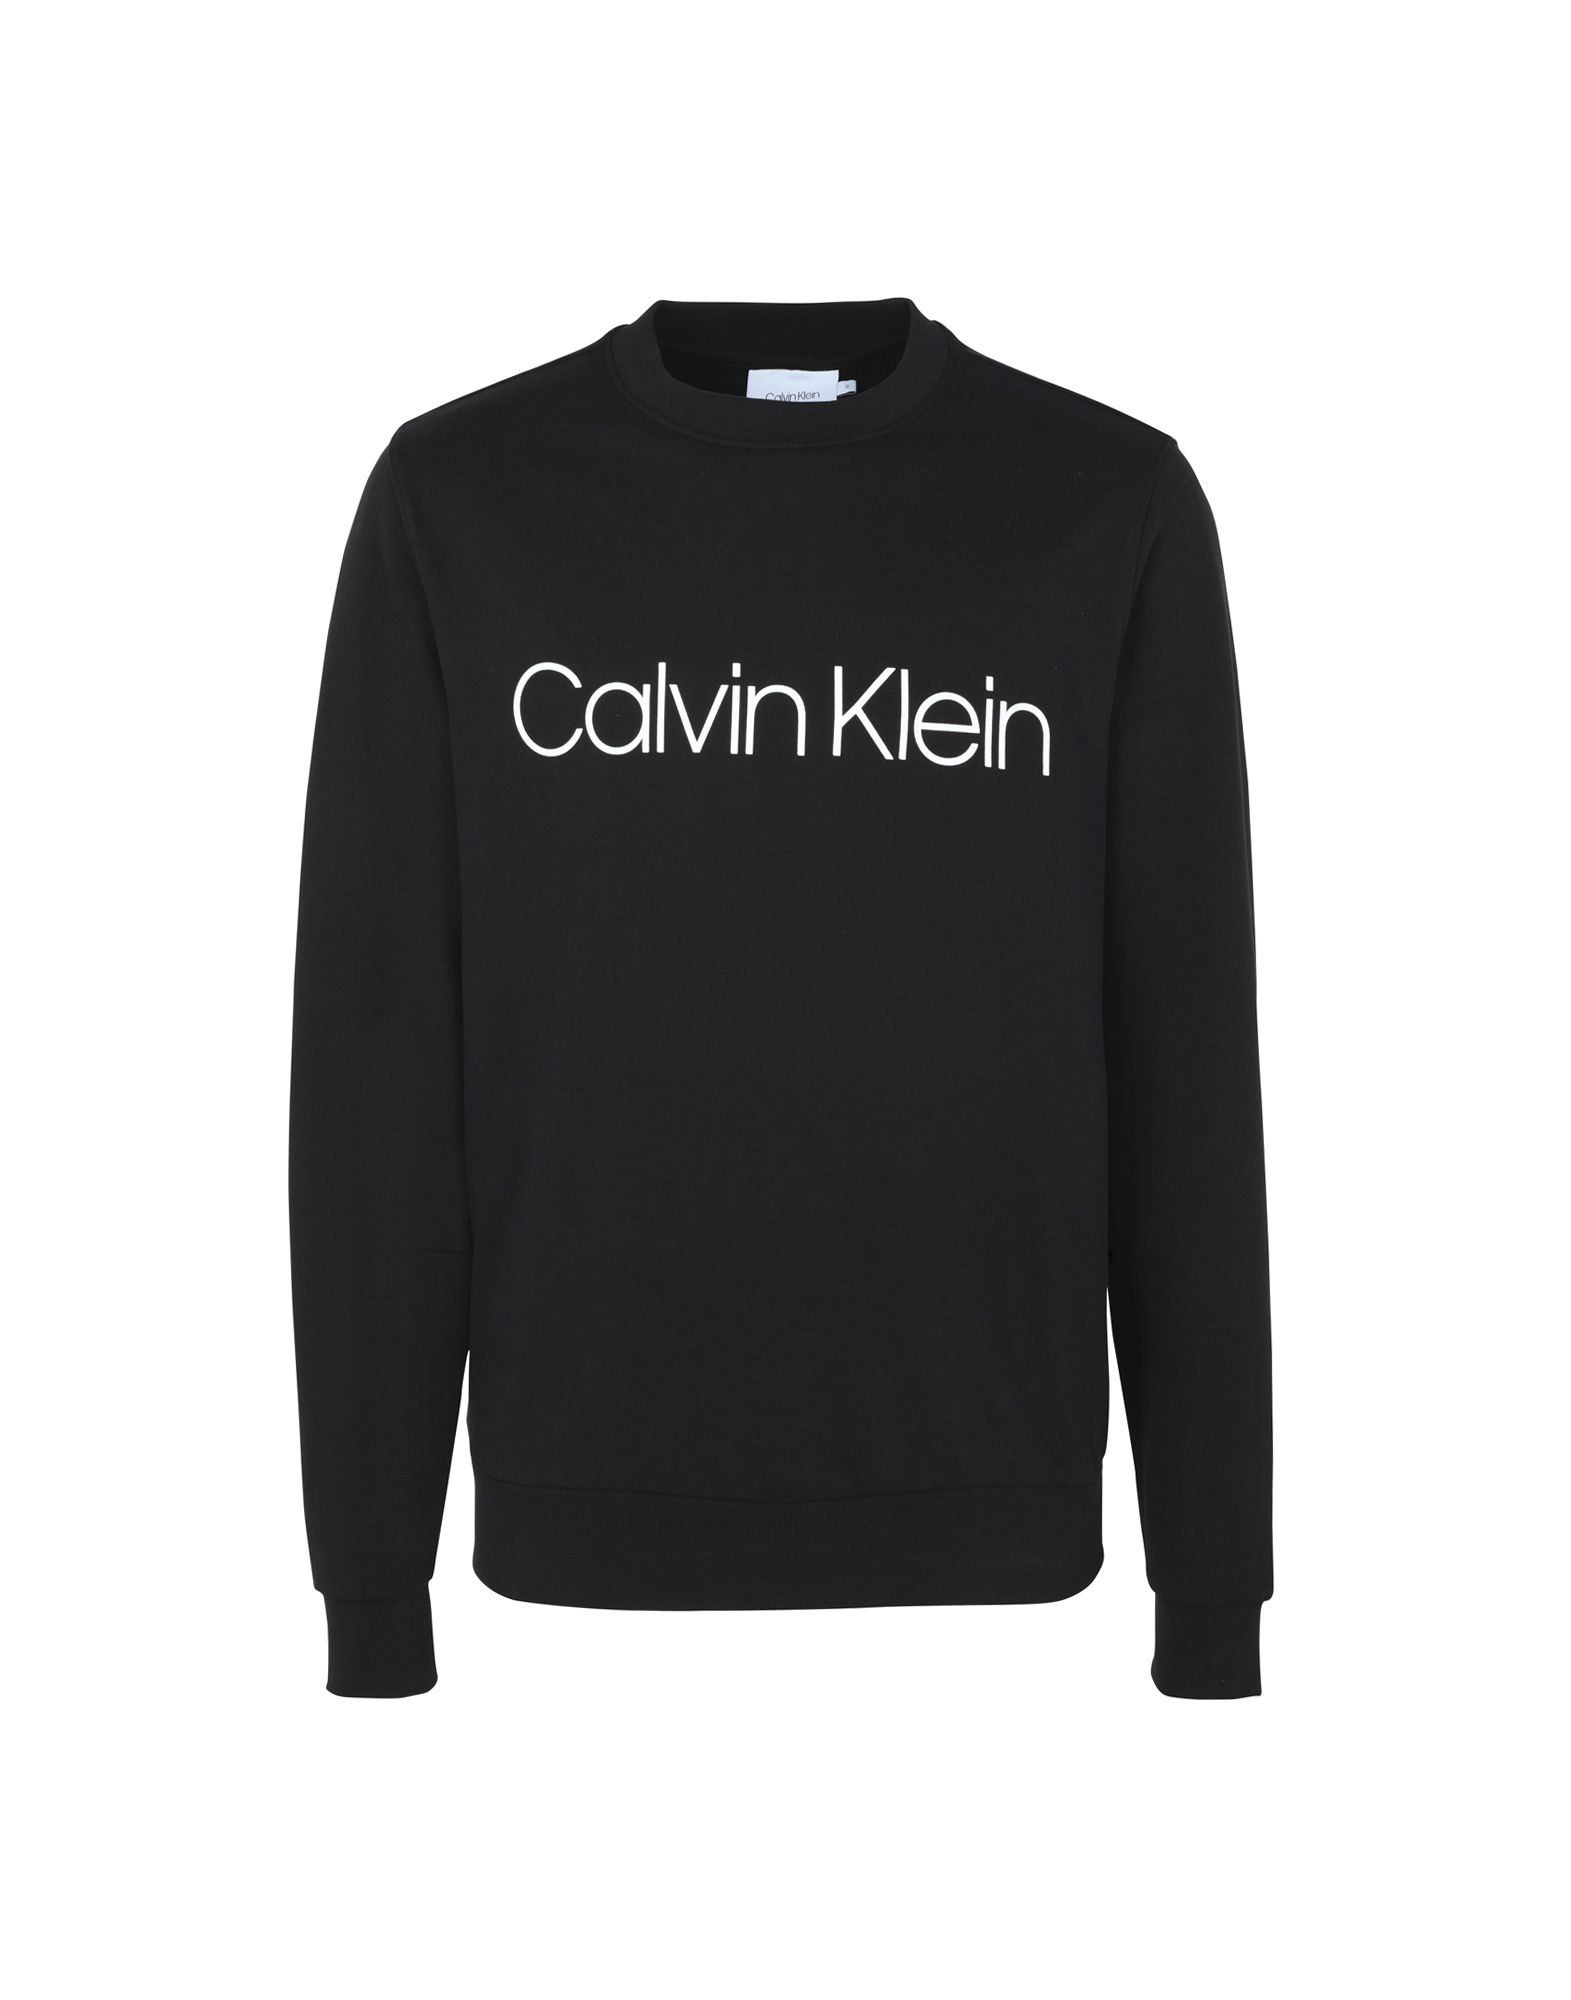 《送料無料》CALVIN KLEIN メンズ スウェットシャツ ブラック S コットン 100% COTTON LOGO SWEATHIRT